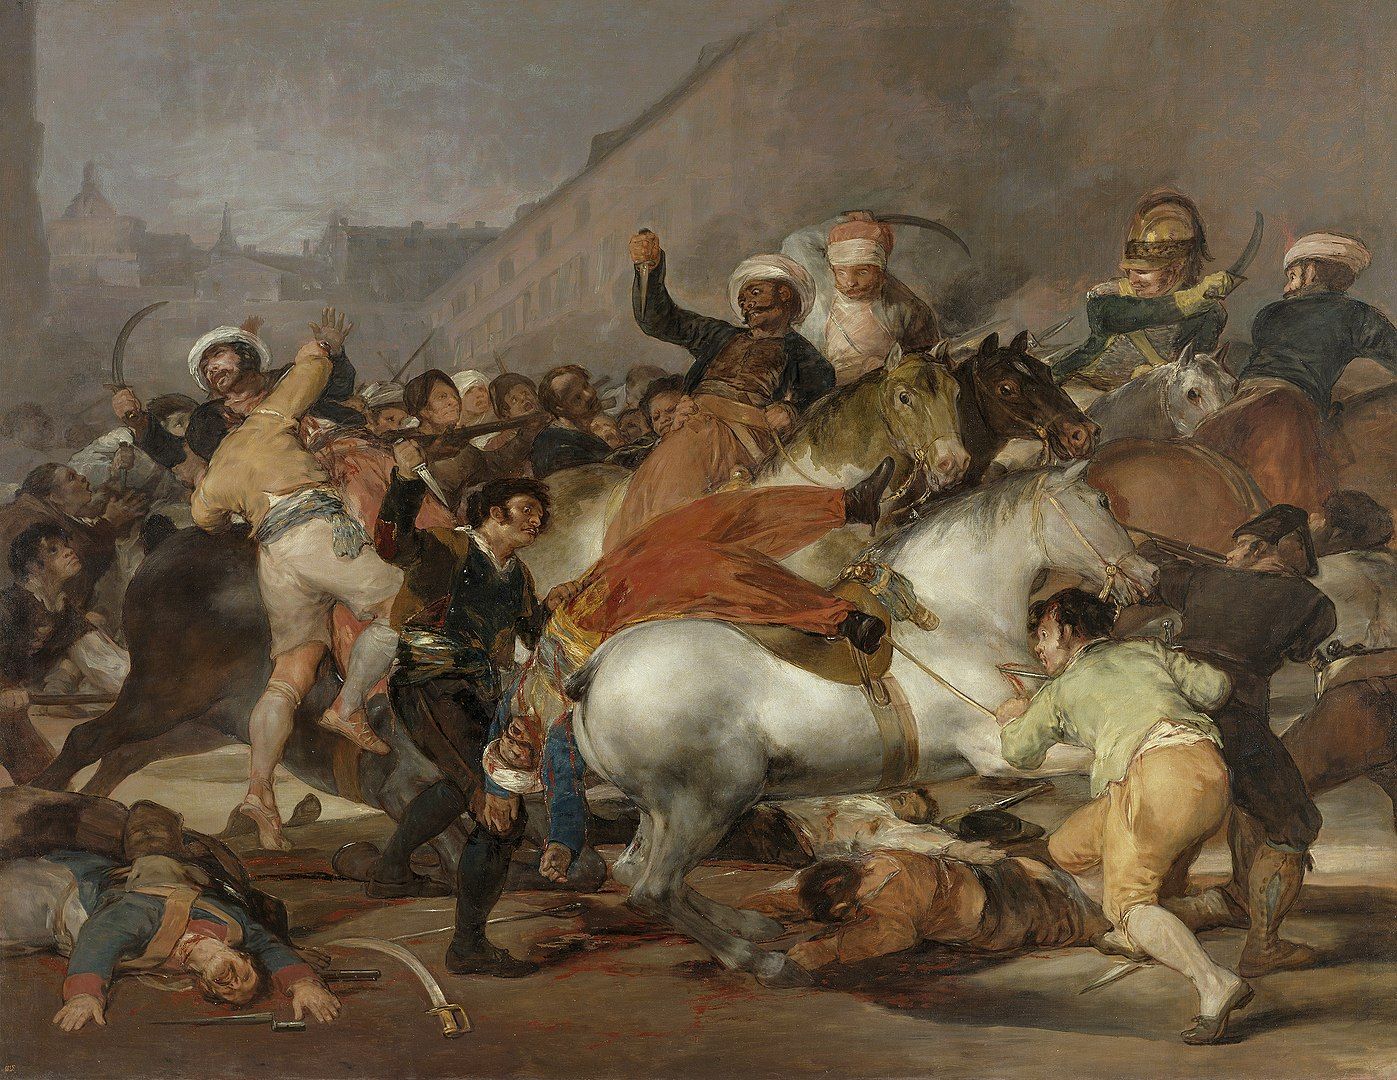 El dos de mayo de 1808 en Madrid, pintado por Goya.